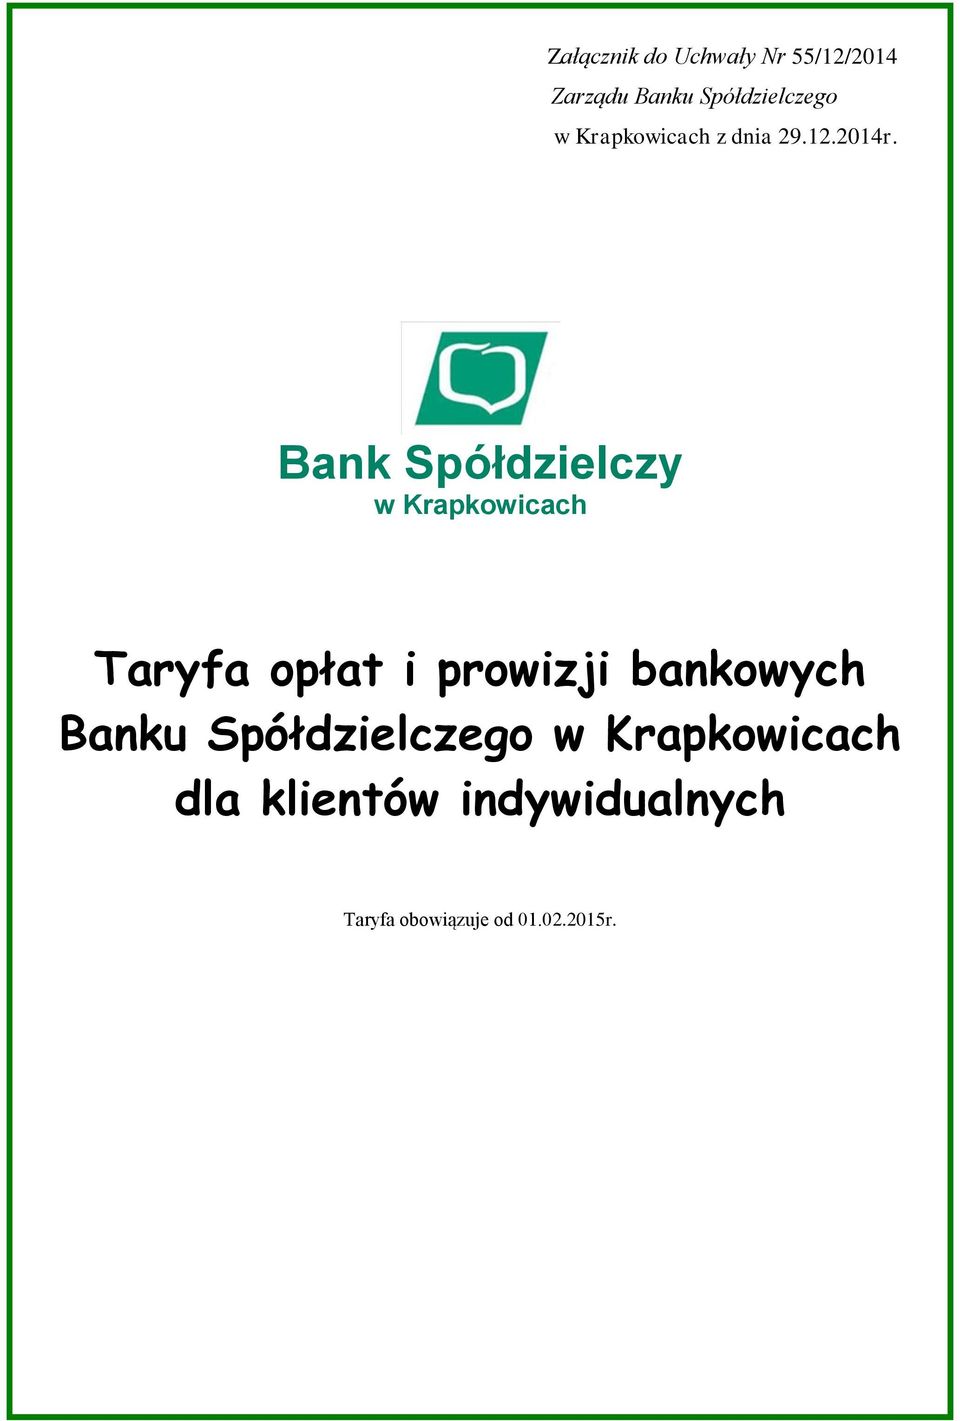 Bank Spółdzielczy w Krapkowicach Taryfa obowiązuje